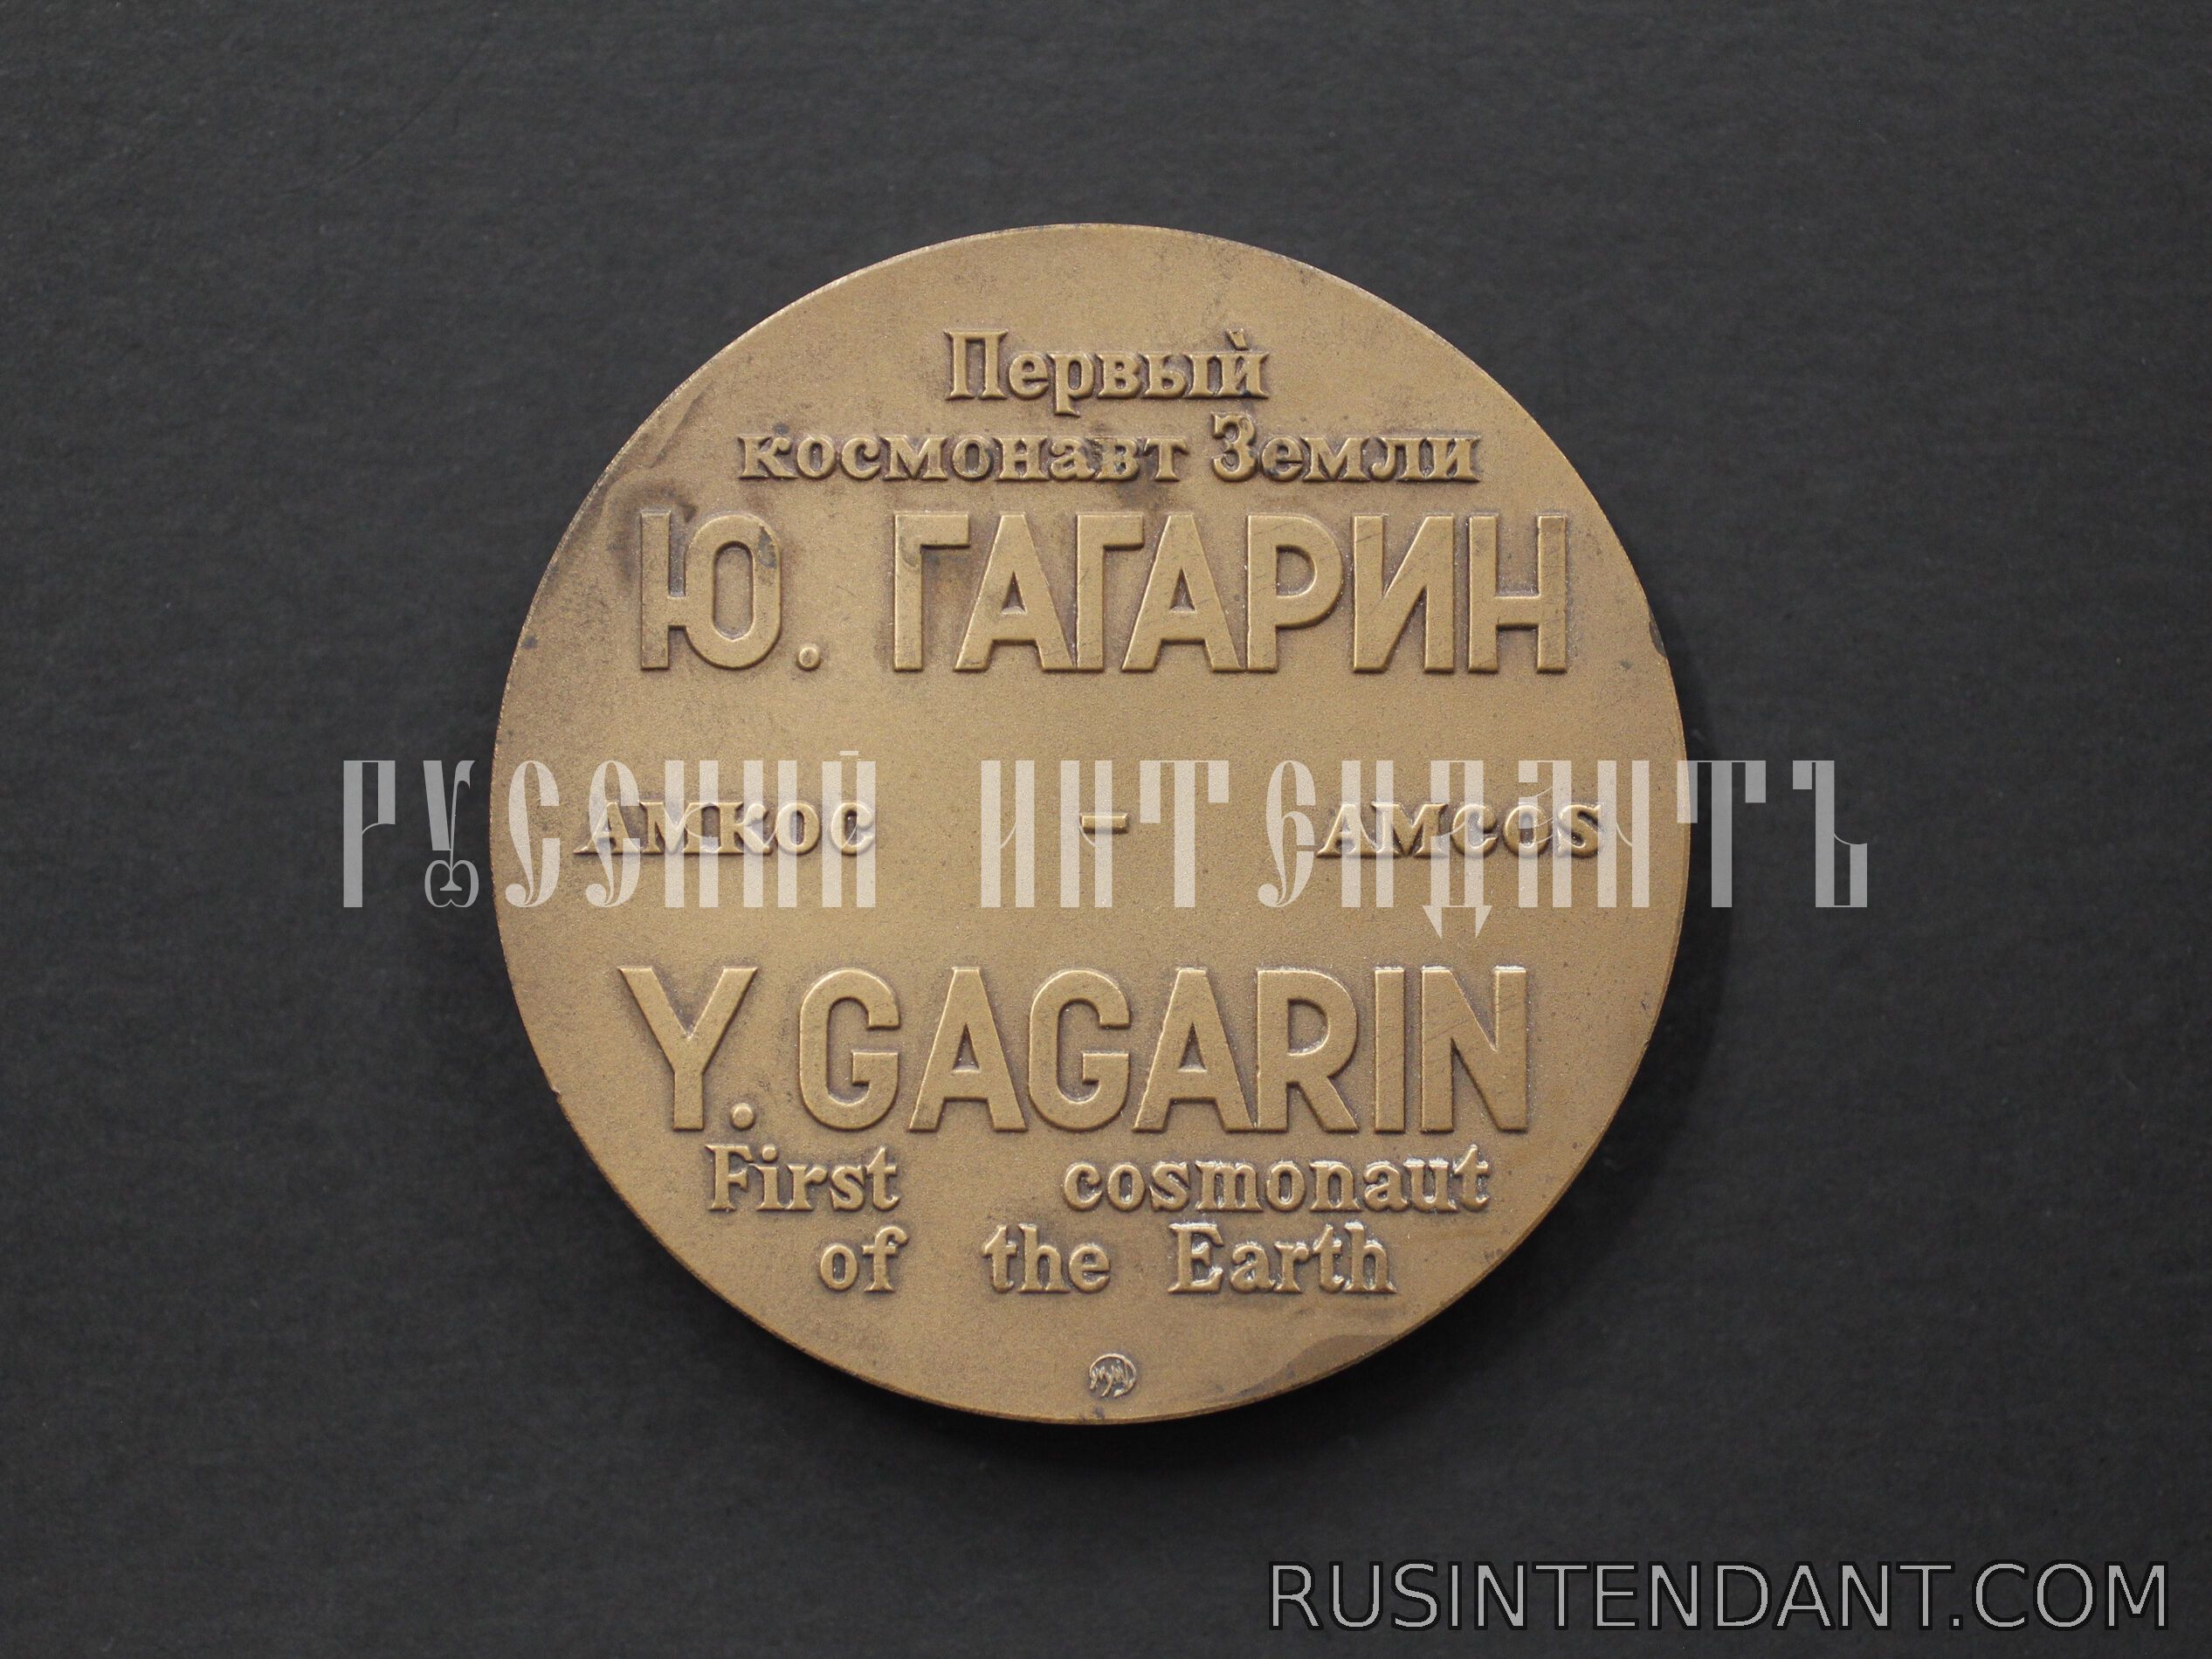 Фото 3: Настольная медаль «Первый космонавт Земли Ю. Гагарин» 